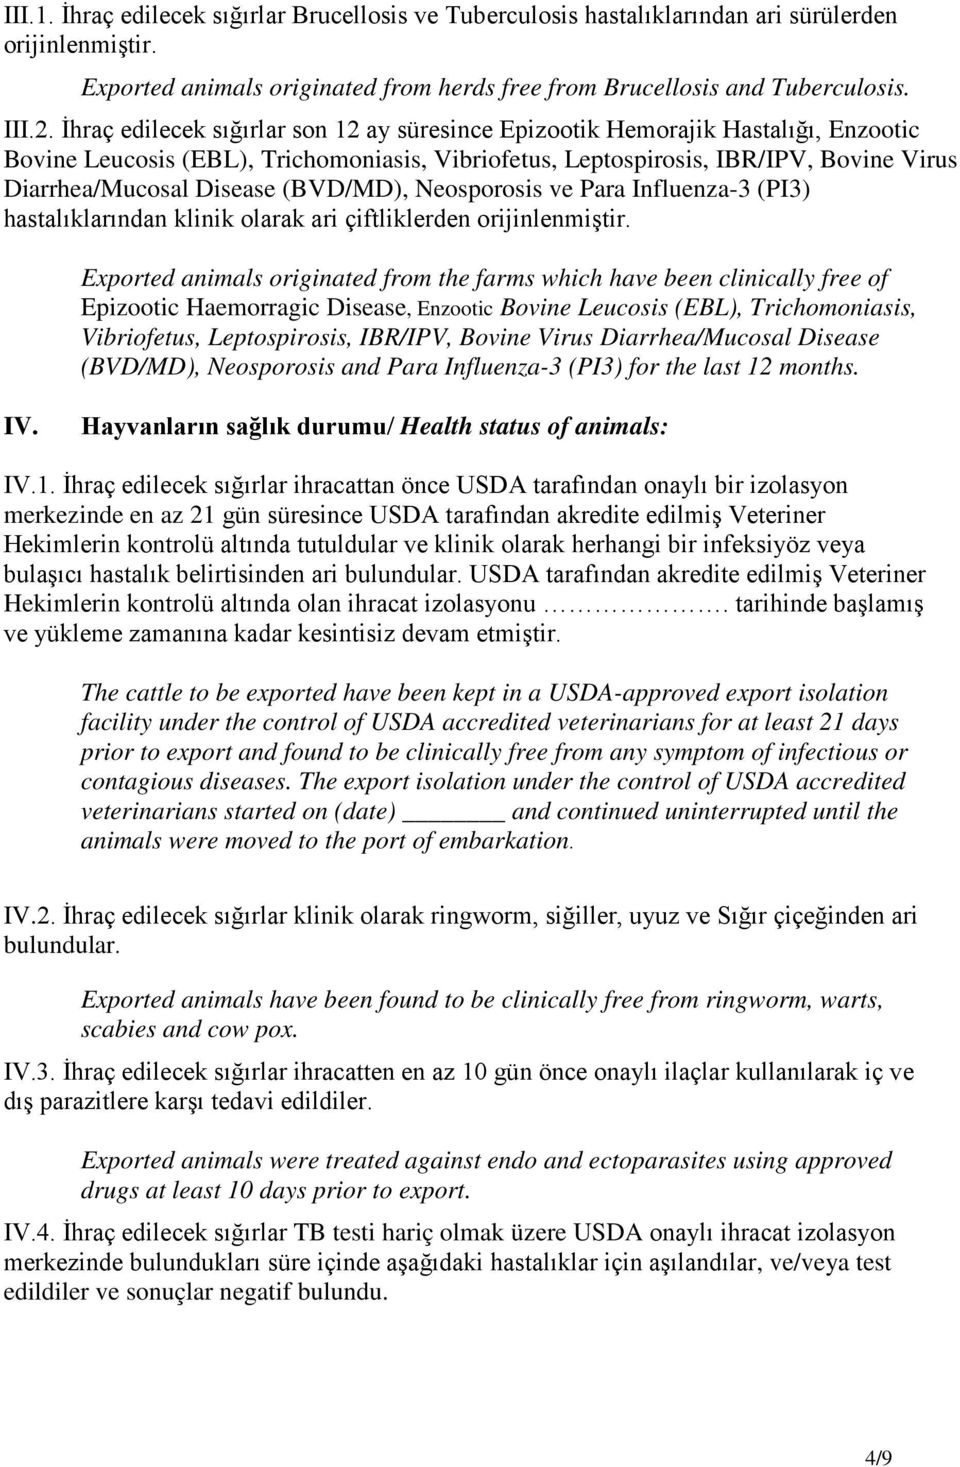 (BVD/MD), Neosporosis ve Para Influenza-3 (PI3) hastalıklarından klinik olarak ari çiftliklerden orijinlenmiştir.